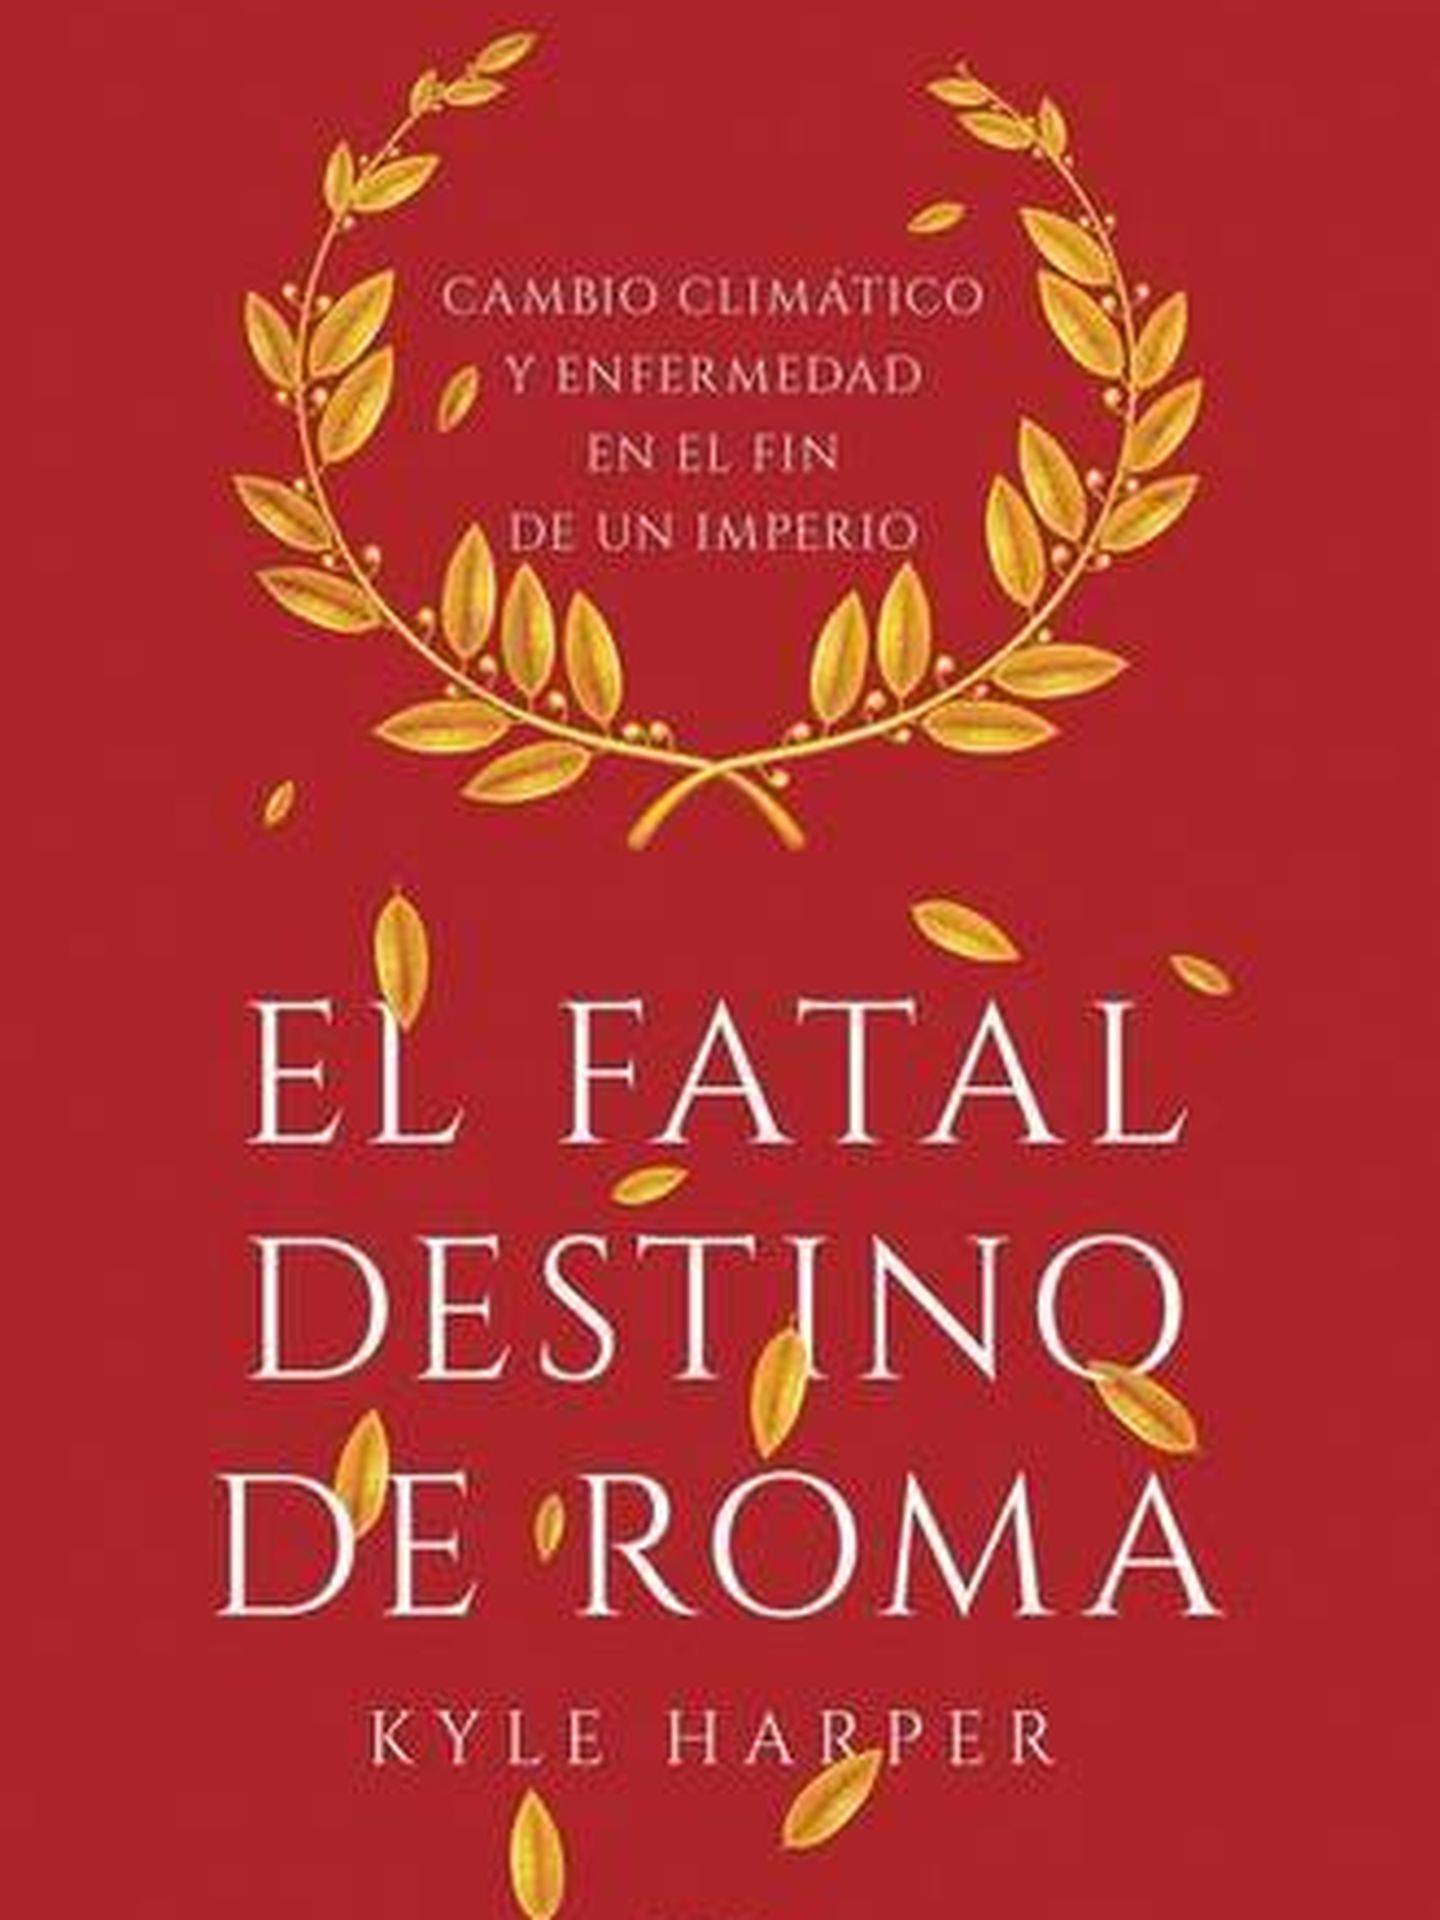 'El fatal destino de Roma'.